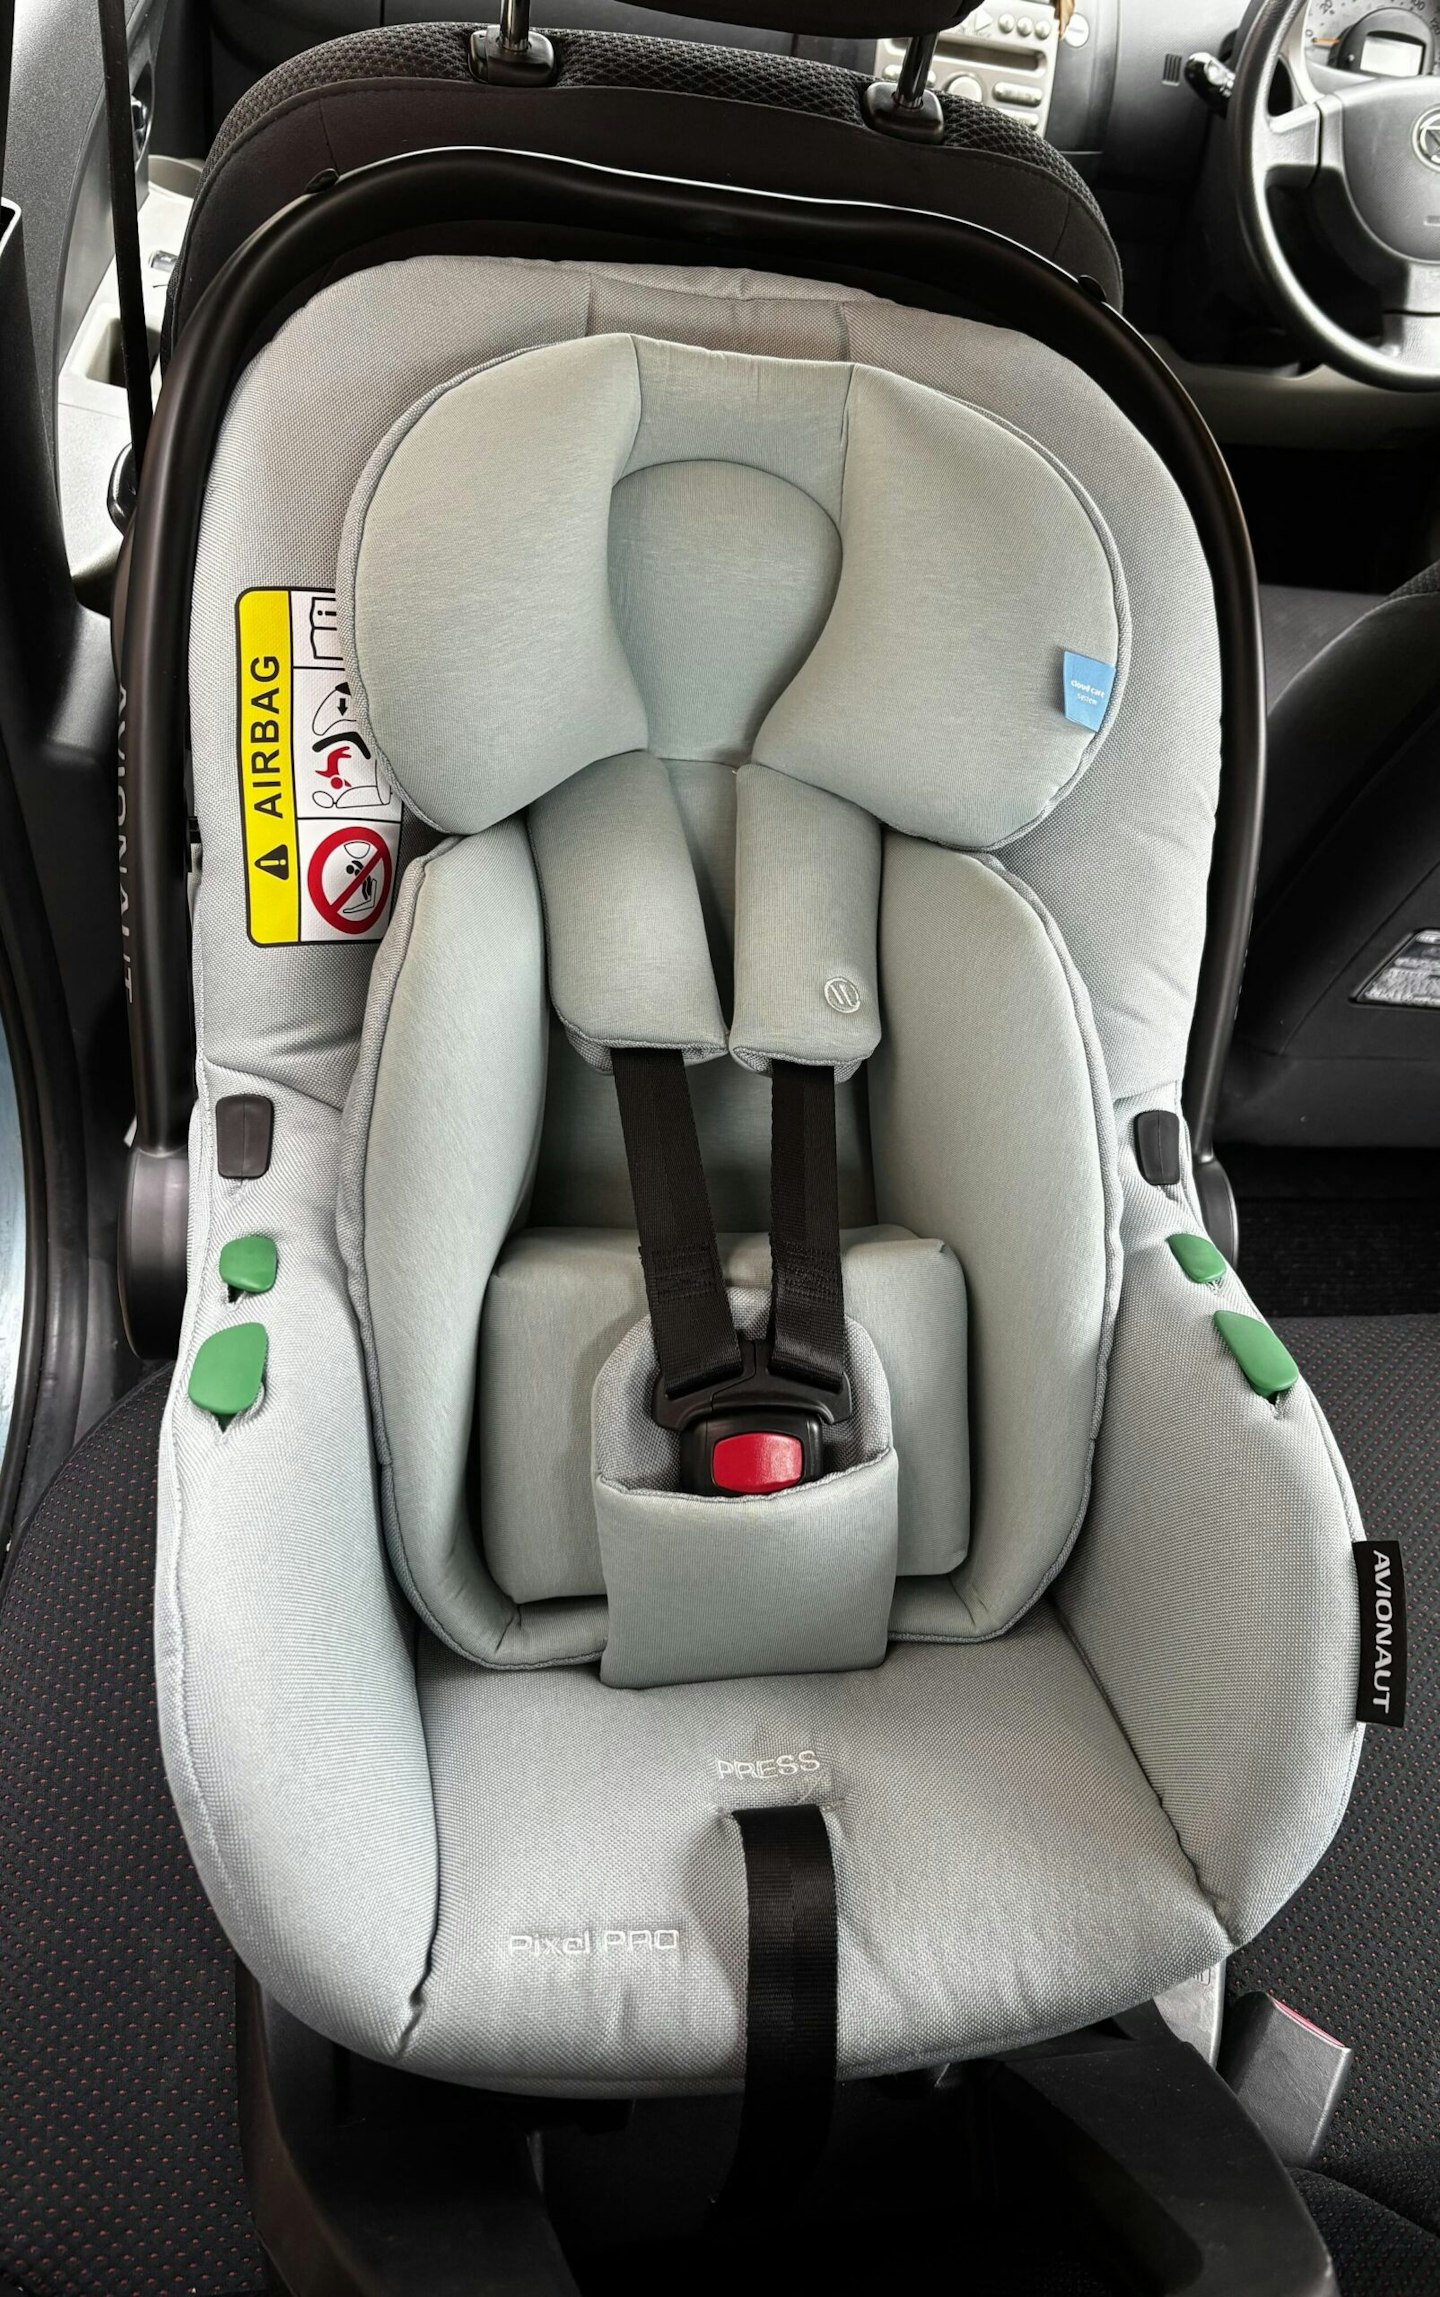 Avionaut Pixel Pro review - car seat